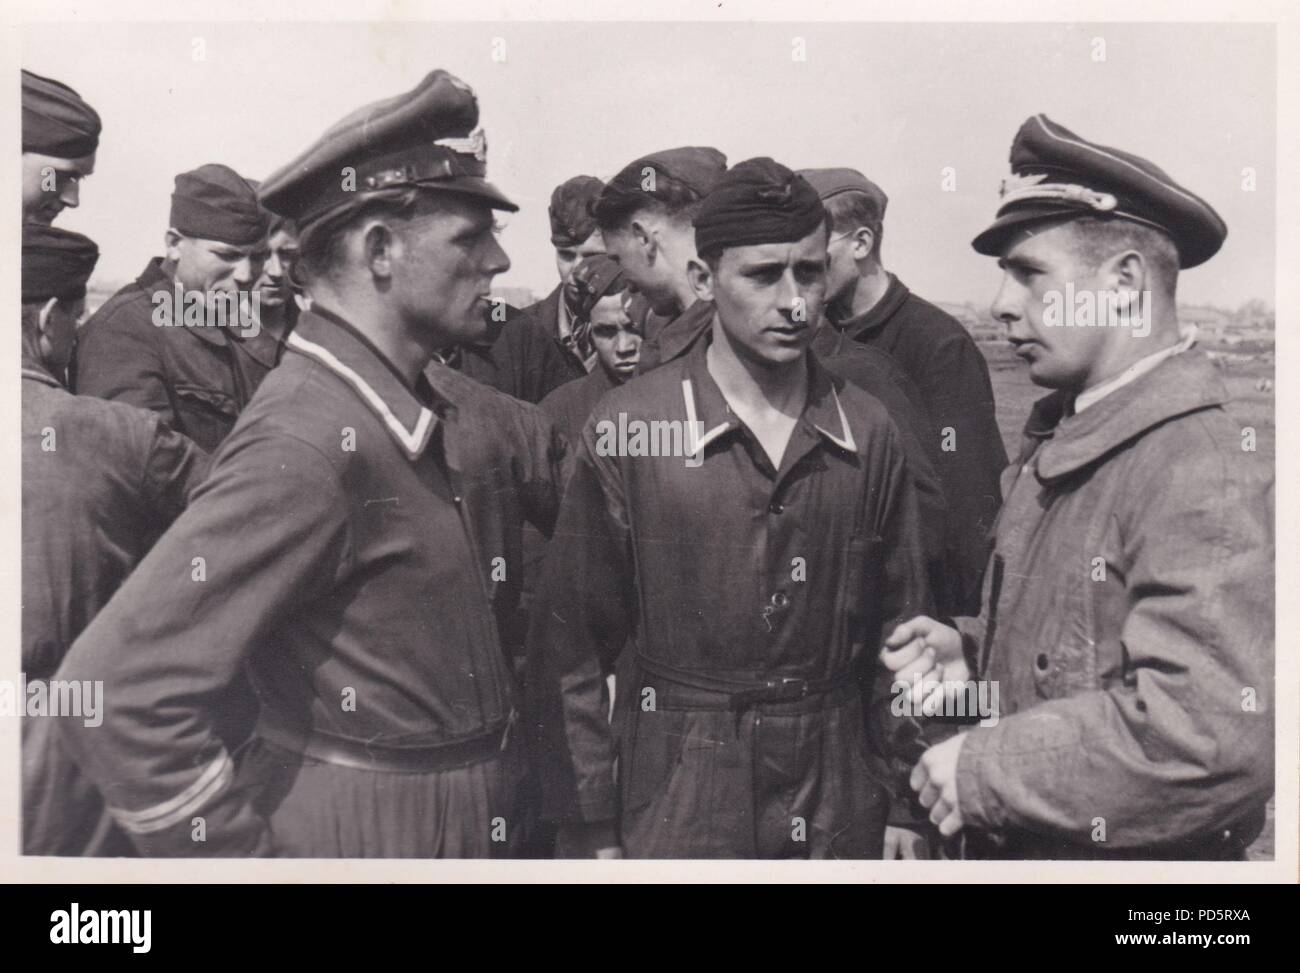 Droit de l'album photo de l'Oberleutnant Oscar Müller de la Kampfgeschwader 1 : un officier de la Luftwaffe parle aux membres de l'équipe au sol de 5. Kampfgescwader 1 Staffel Hindenburg' à 'Aérodrome Dno en Russie, 1942. Banque D'Images